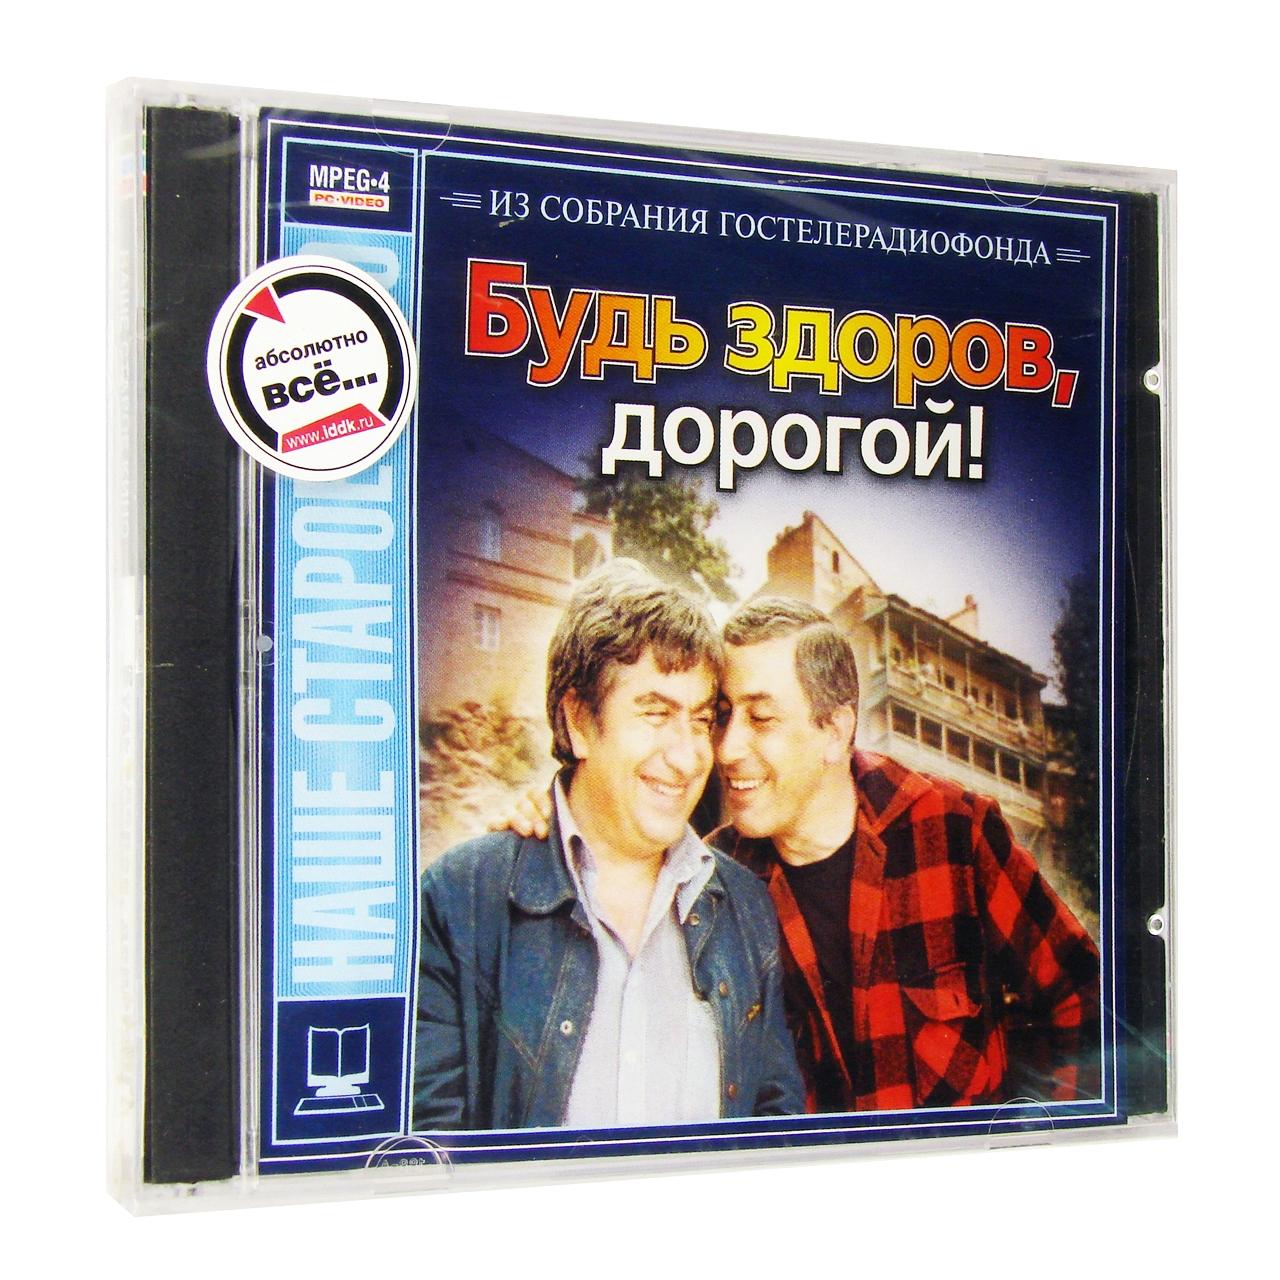 Компьютерный компакт-диск Будь здоров, дорогой! (ПК), фирма "Гостелерадиофонд", 1CD